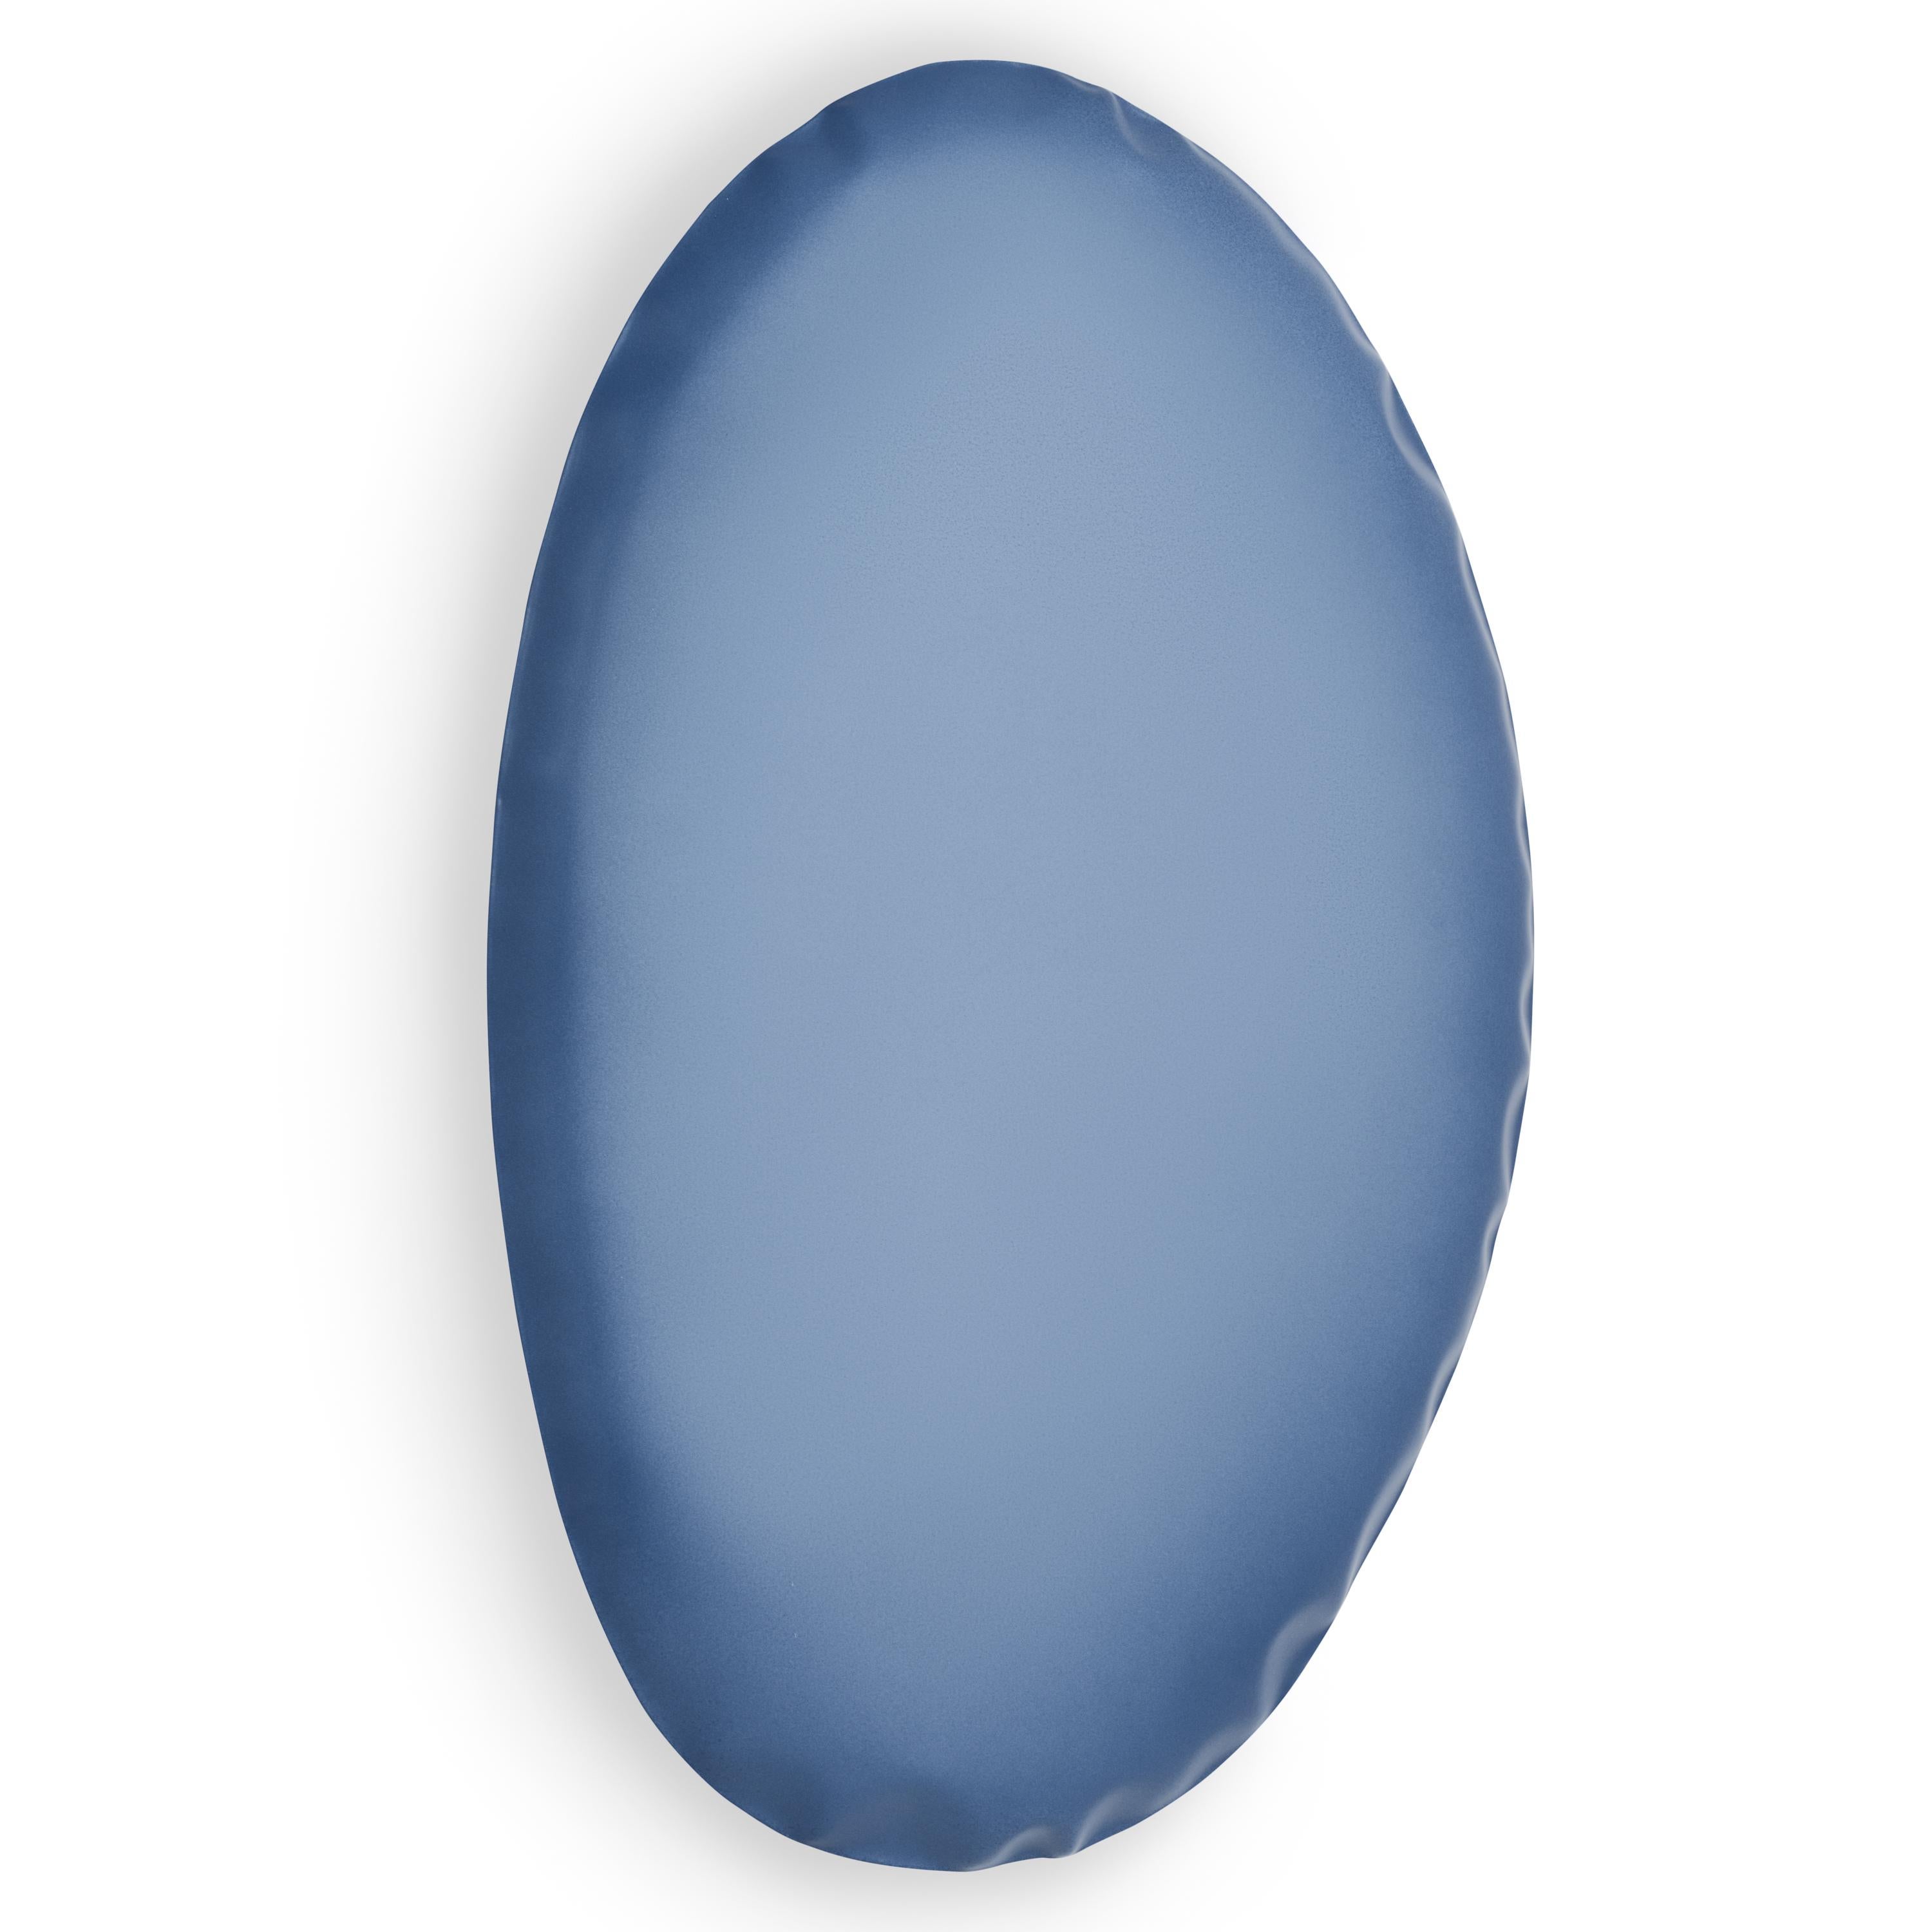 Blauer Matter Tafla O5 Wandspiegel von Zieta
Abmessungen: T6 x B40 x H60 cm 
MATERIAL: Stahl
Verfügbare Ausführungen: Auch in anderen Größen und Farben erhältlich, bitte kontaktieren Sie uns.

Weiche Stahleindrücke
Die Auseinandersetzung mit dem